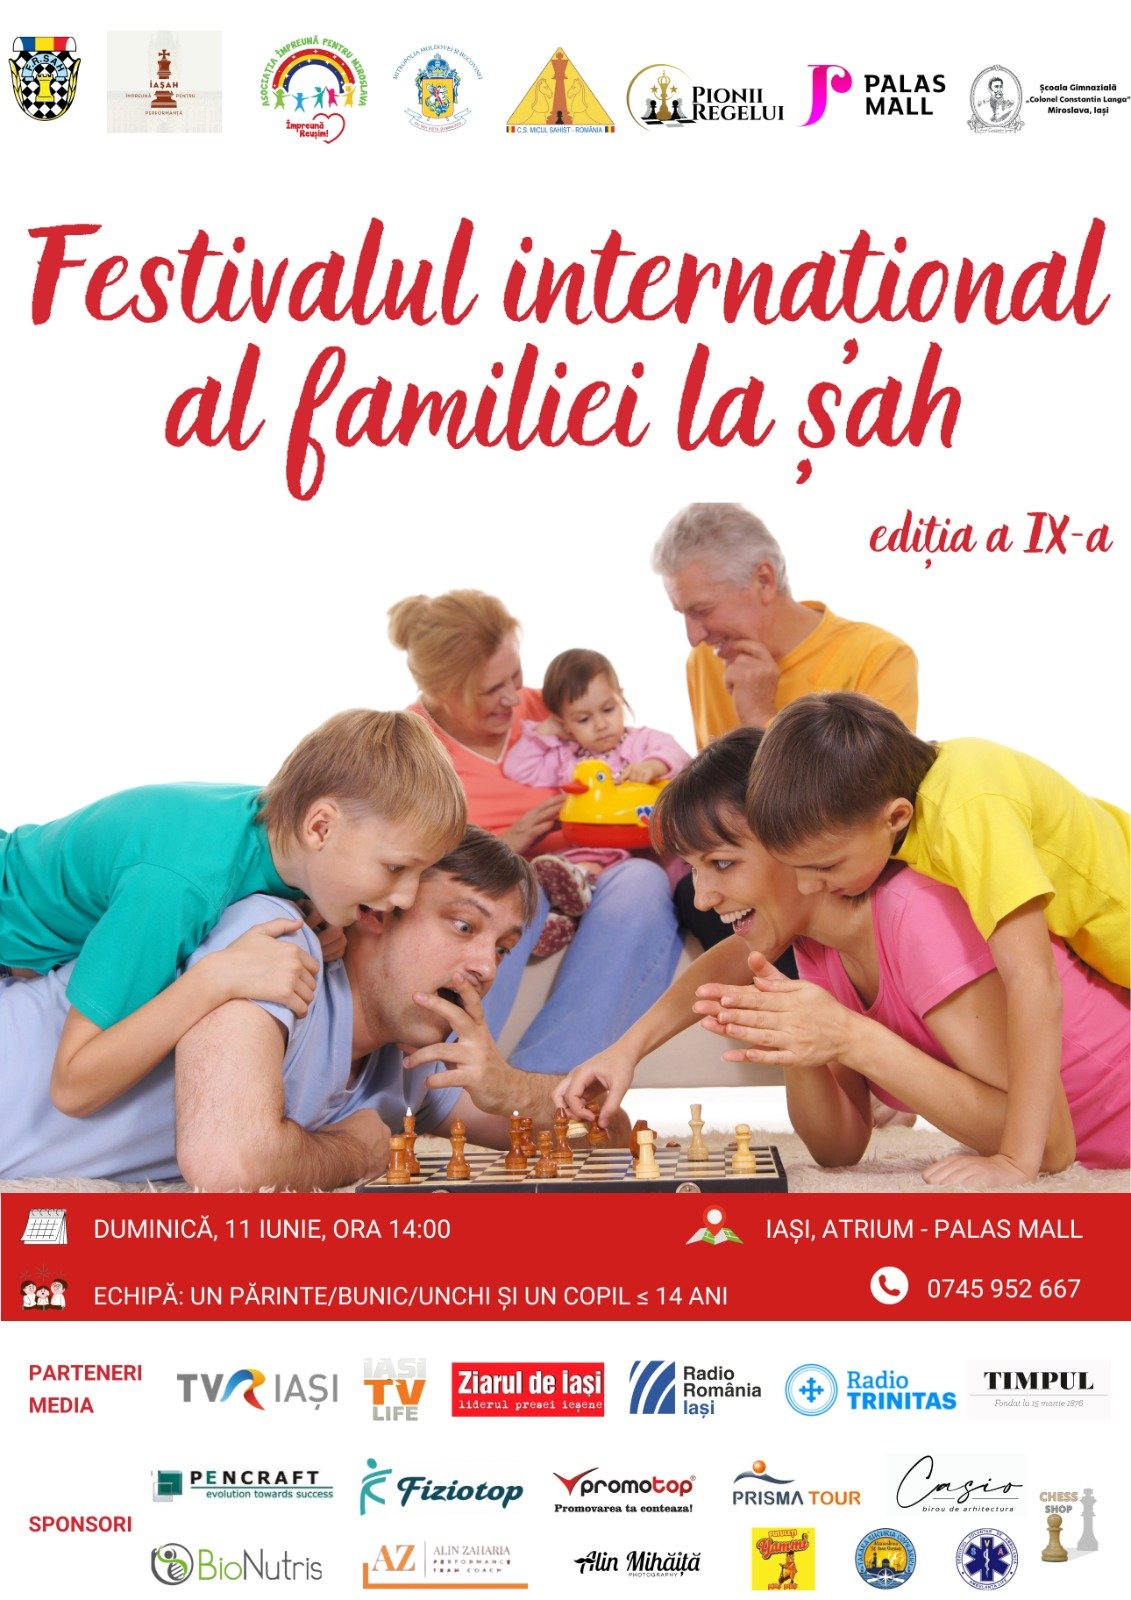  Festivalul internațional al familiei la șah, duminică, 11 iunie, la Palas Mall